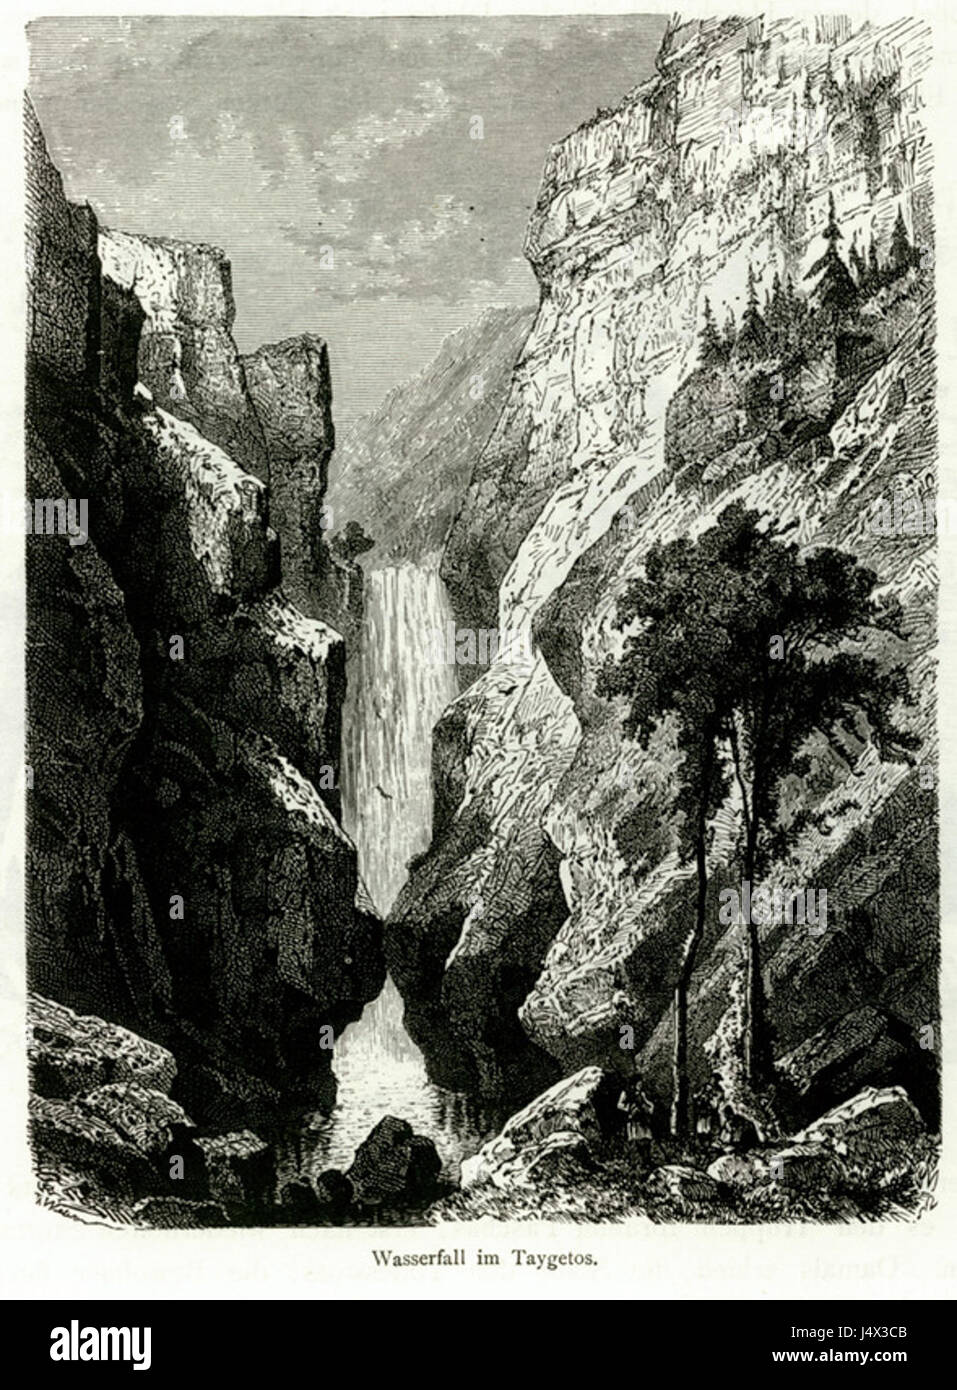 Wasserfall im Taigetos Schweiger Lerchenfeld Amand (Freiherr von) 1887 Foto Stock